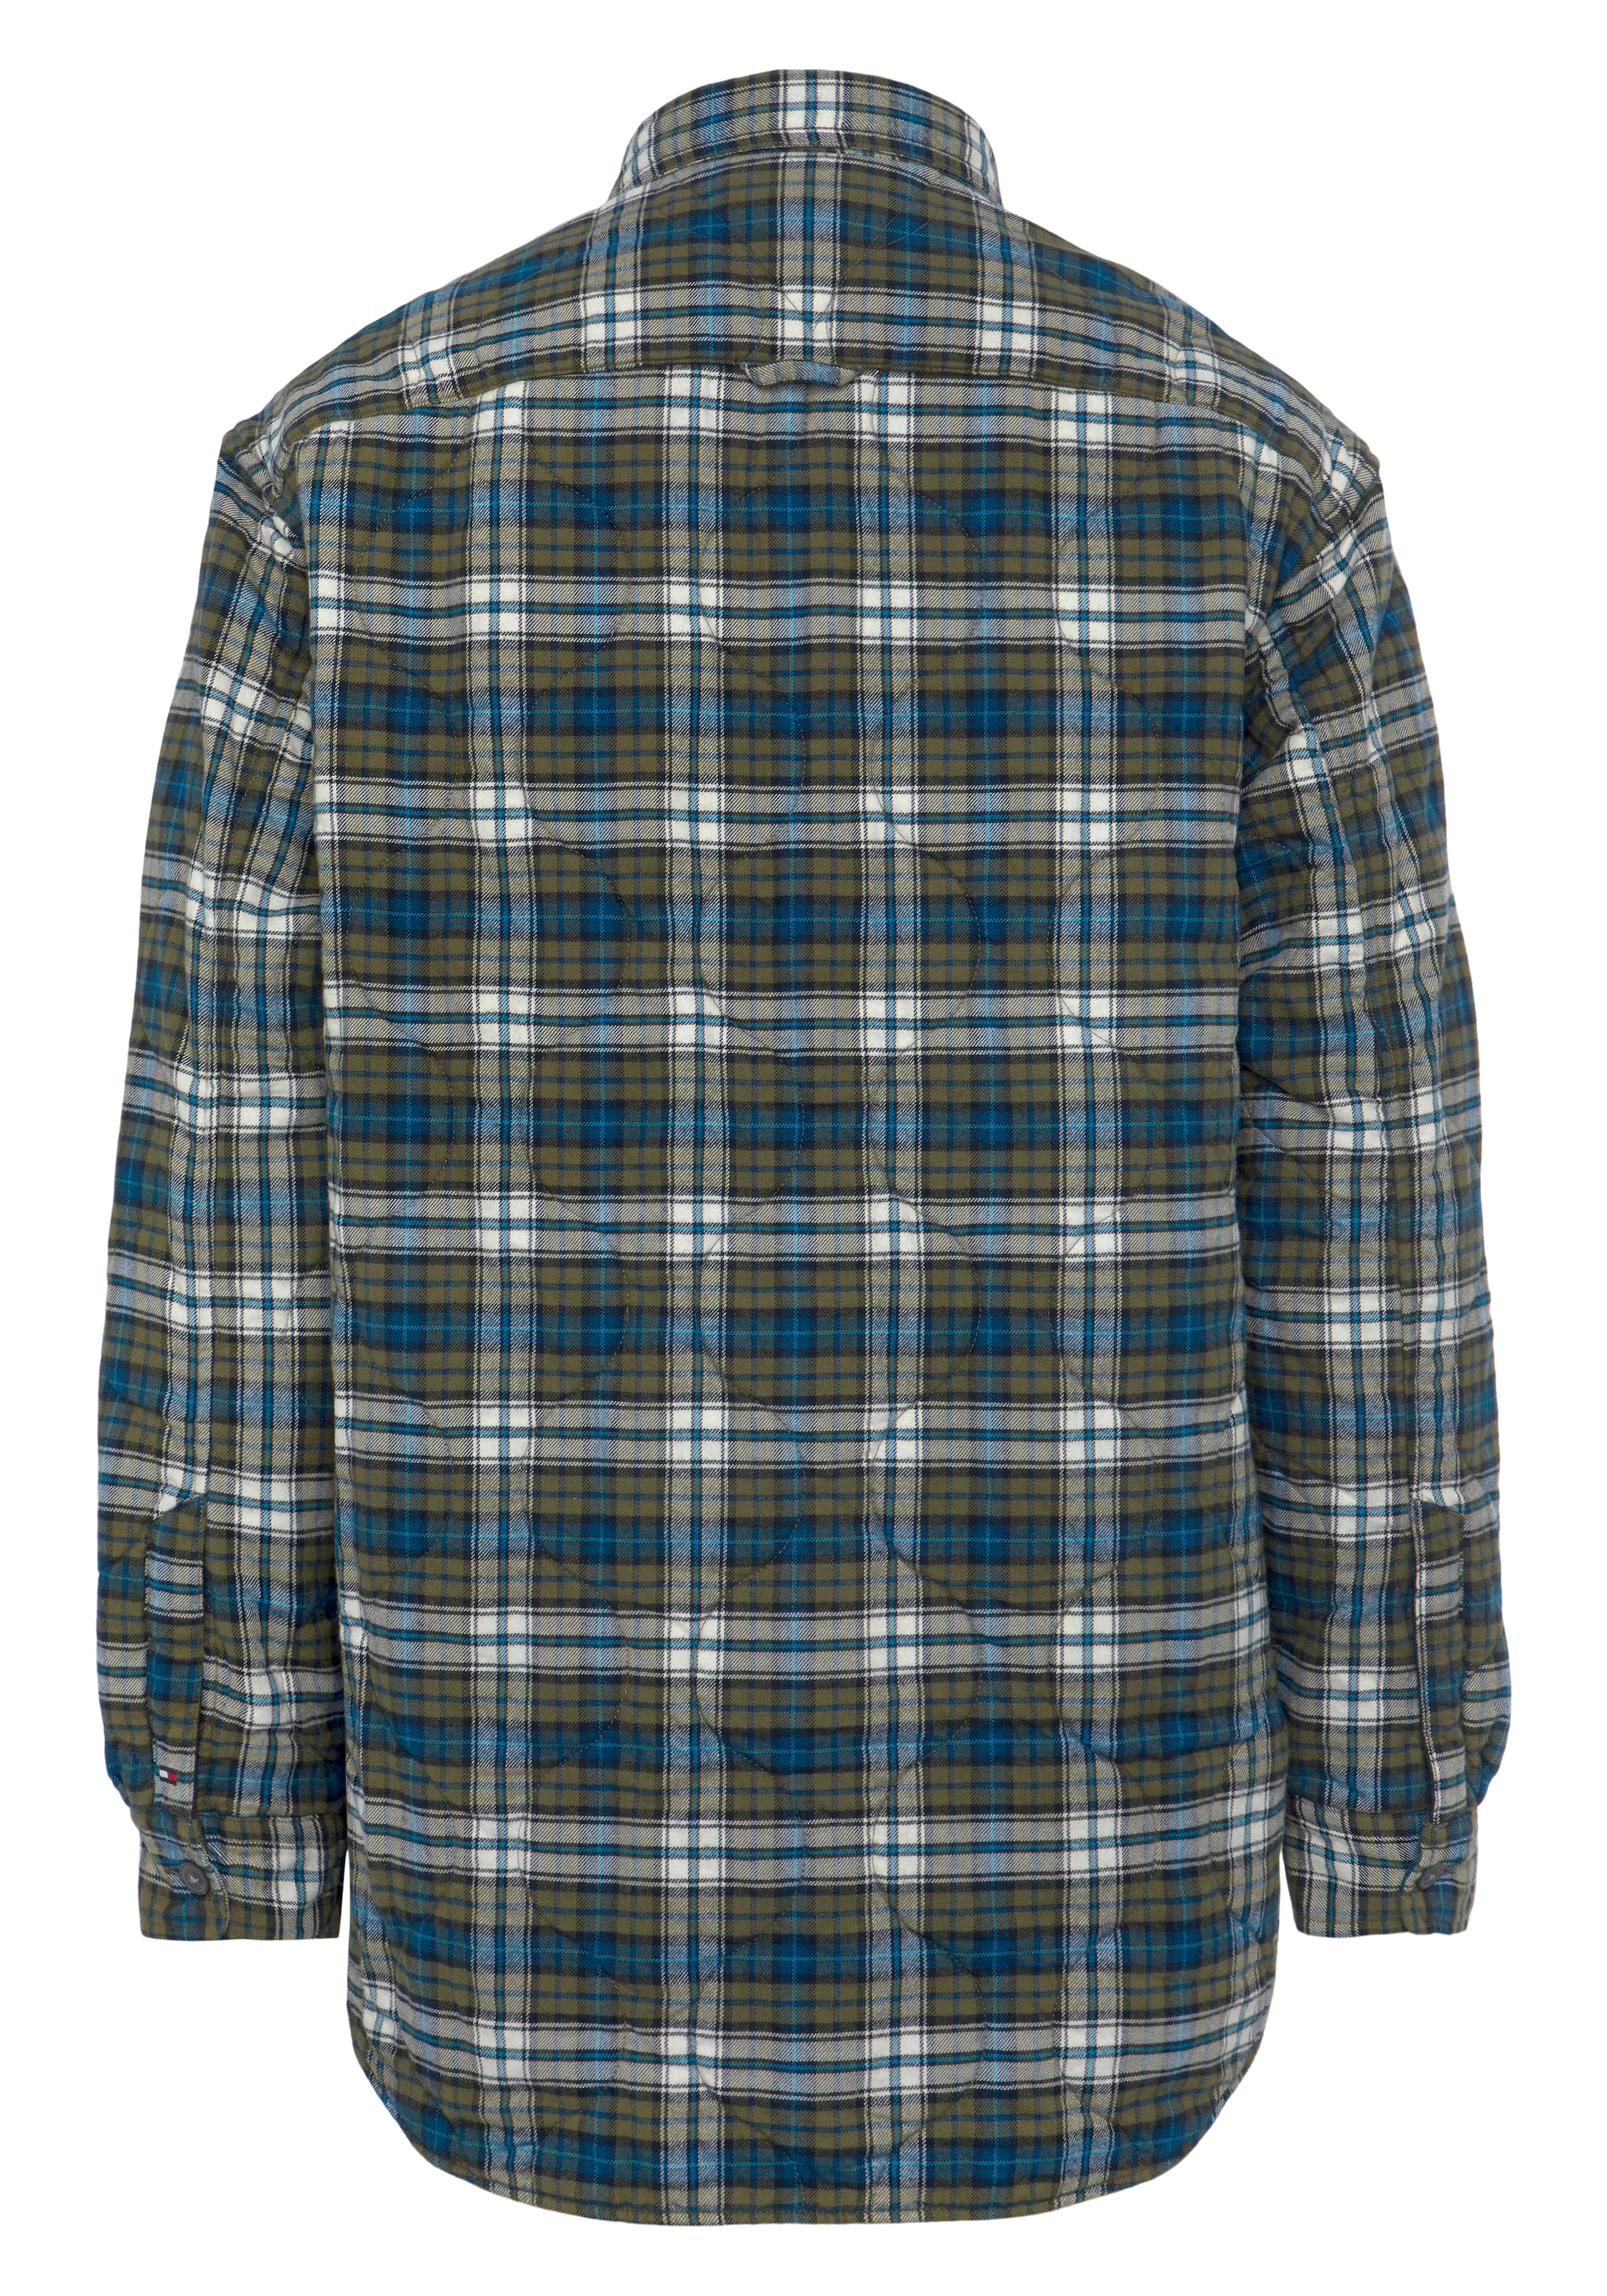 Tommy Hilfiger Outdoorhemd, mit wärmender Polyesterfüllung